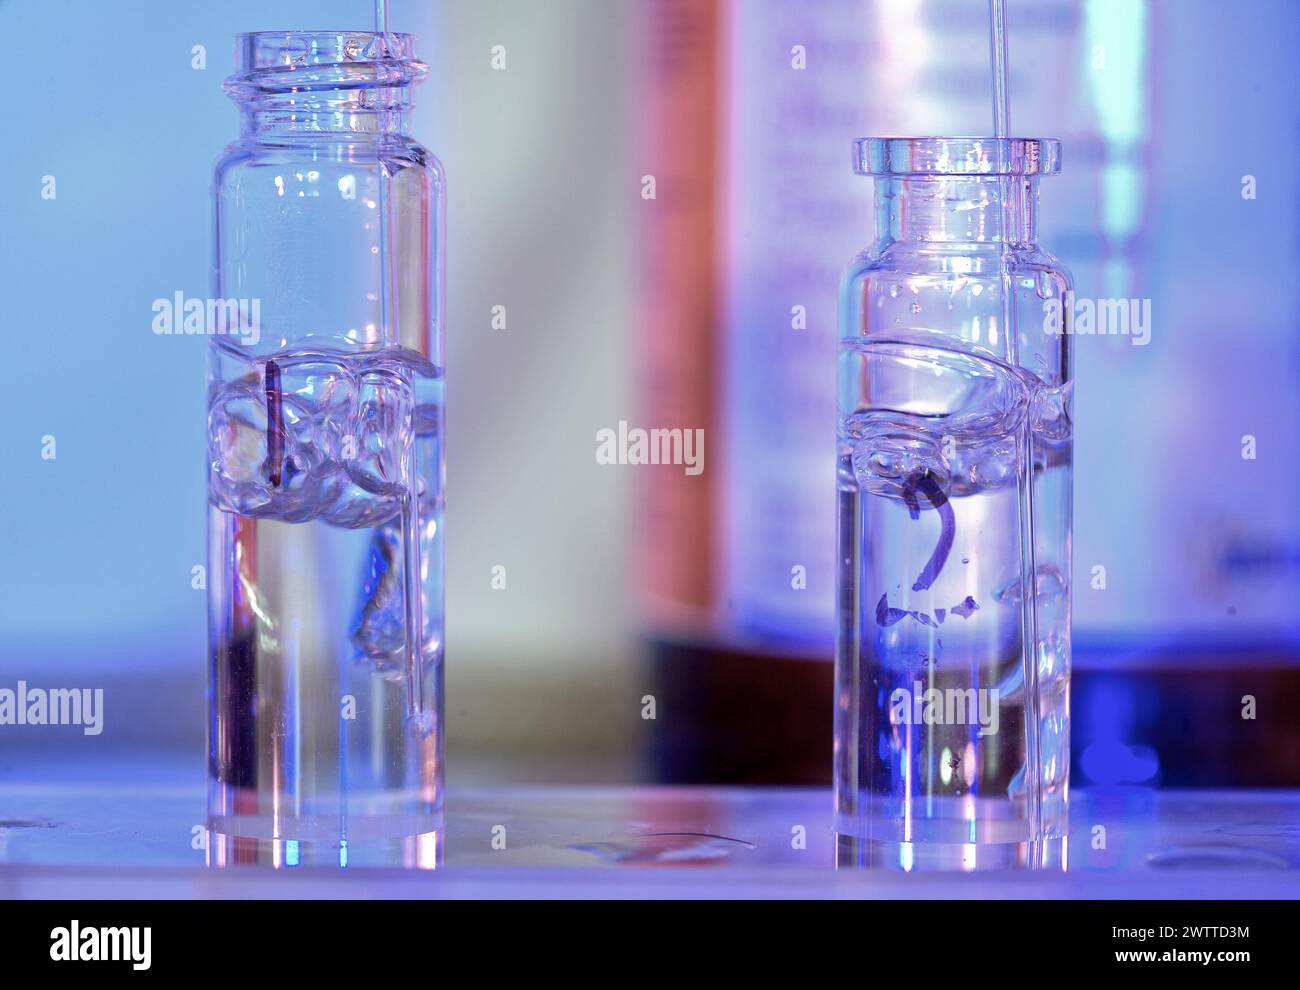 Due fiale da laboratorio contenenti campioni biologici in un ambiente scientifico con luce blu Foto Stock